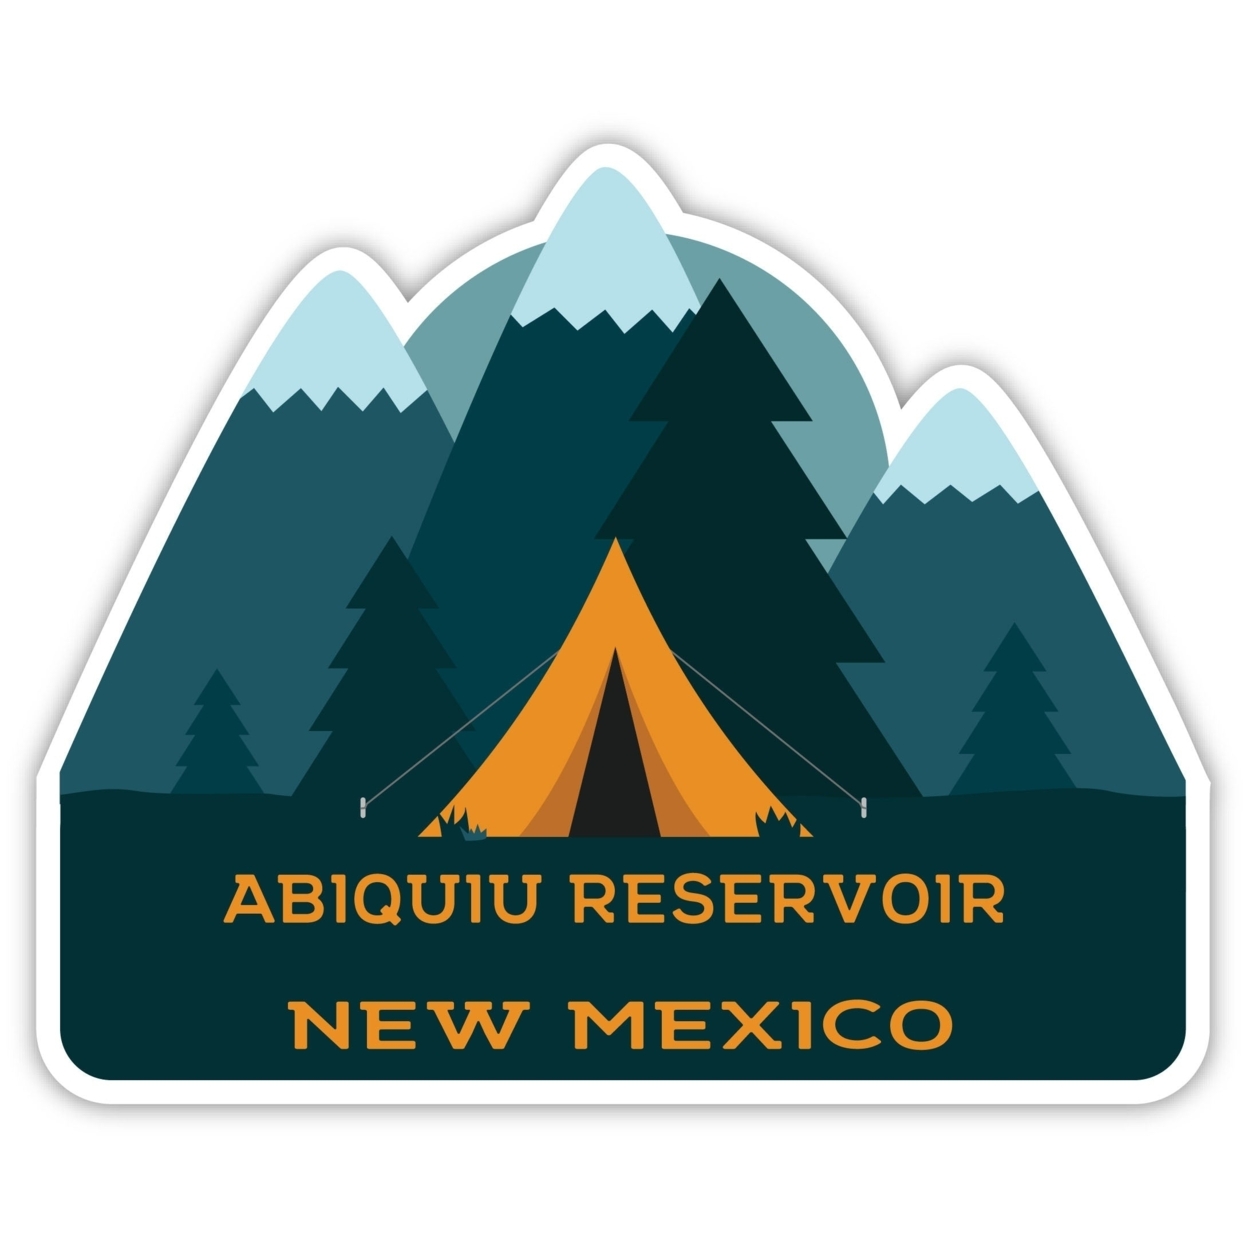 Abiquiu Reservoir New Mexico Souvenir Decorative Stickers (Choose Theme And Size) - Single Unit, 6-Inch, Tent